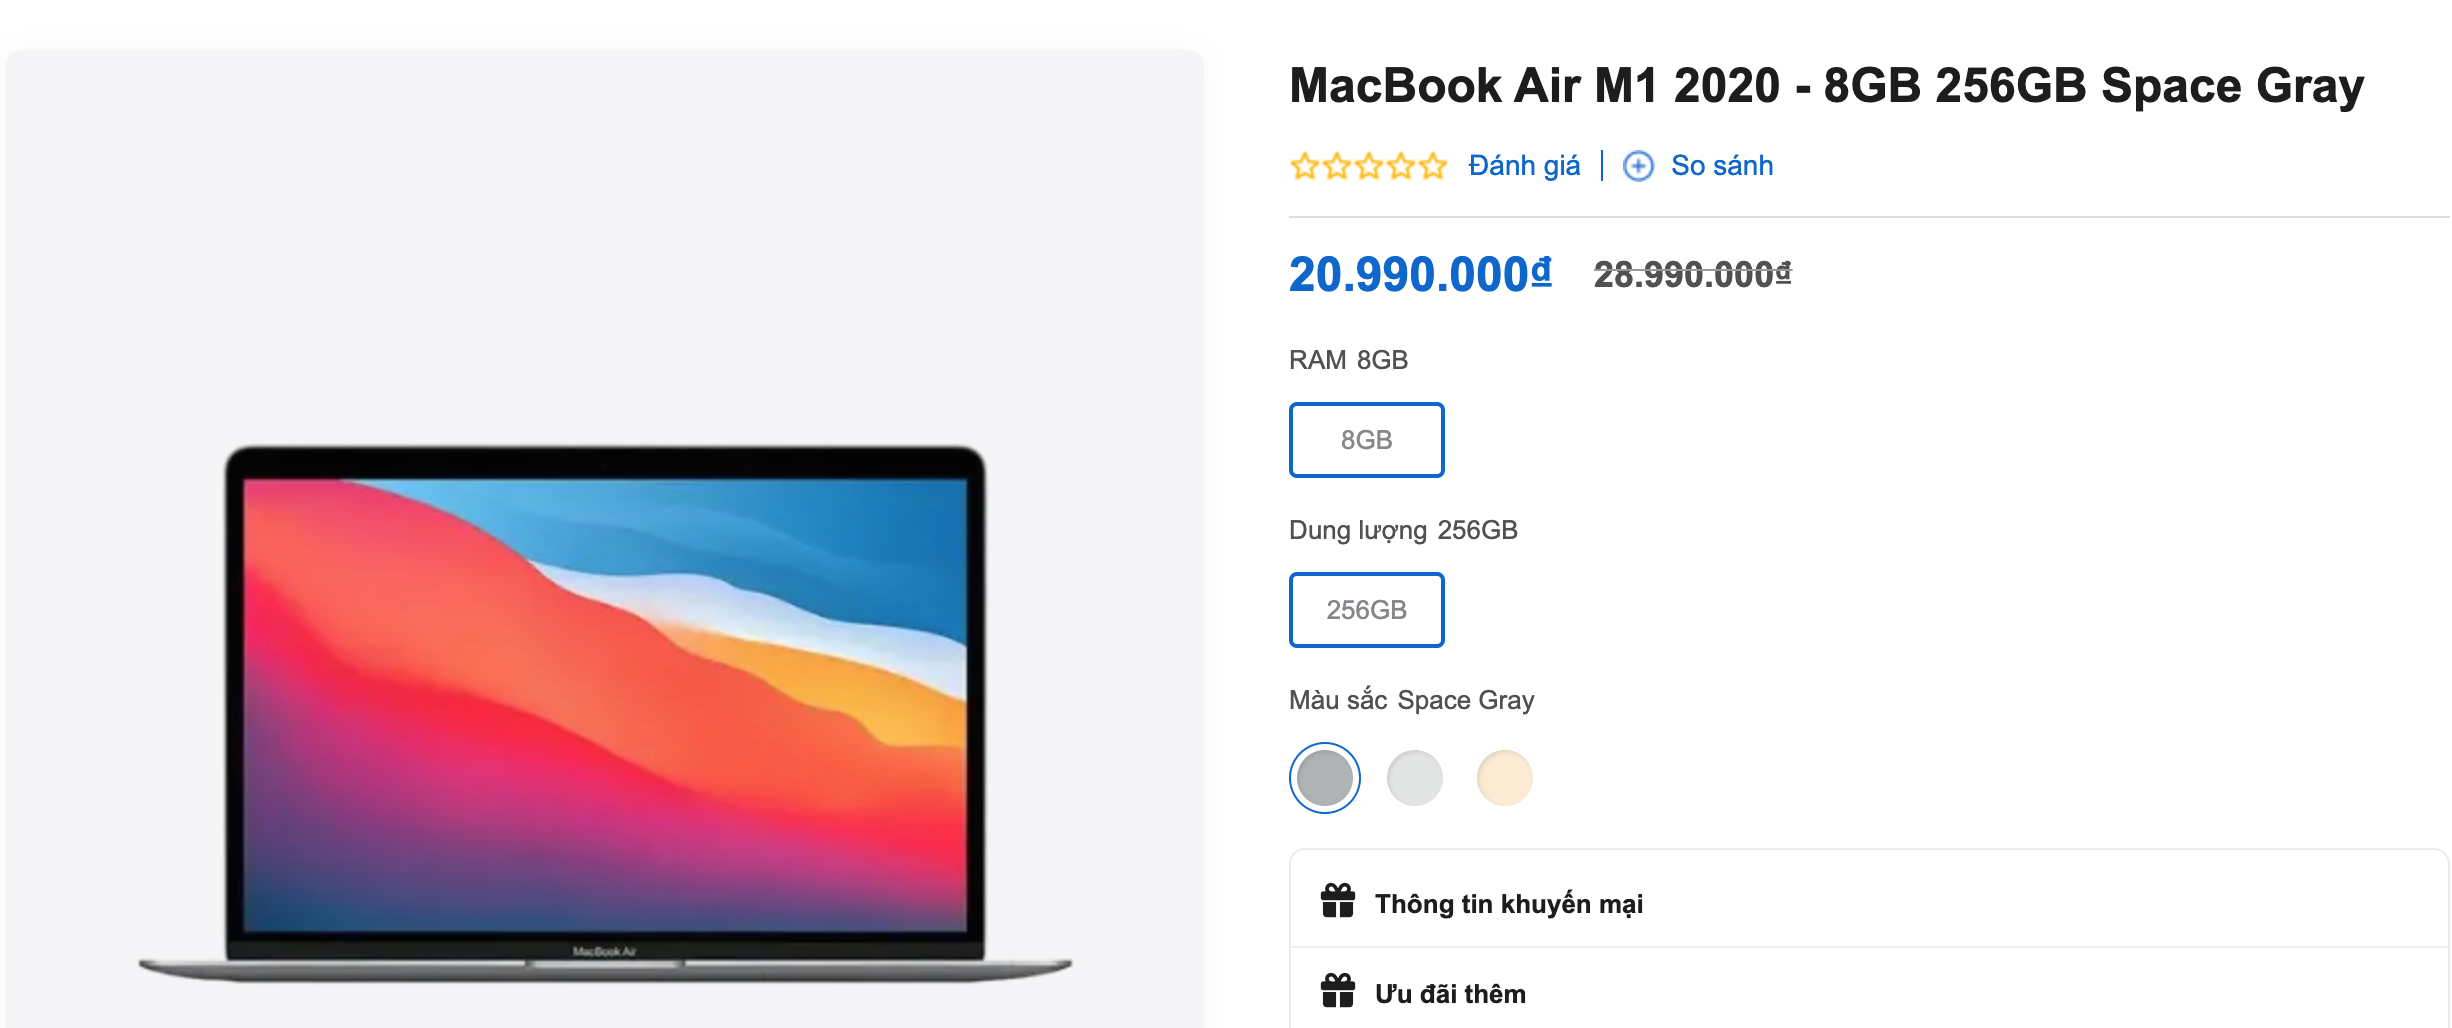 Giá MacBook Air M1 ở Việt Nam rẻ hơn ở Mỹ